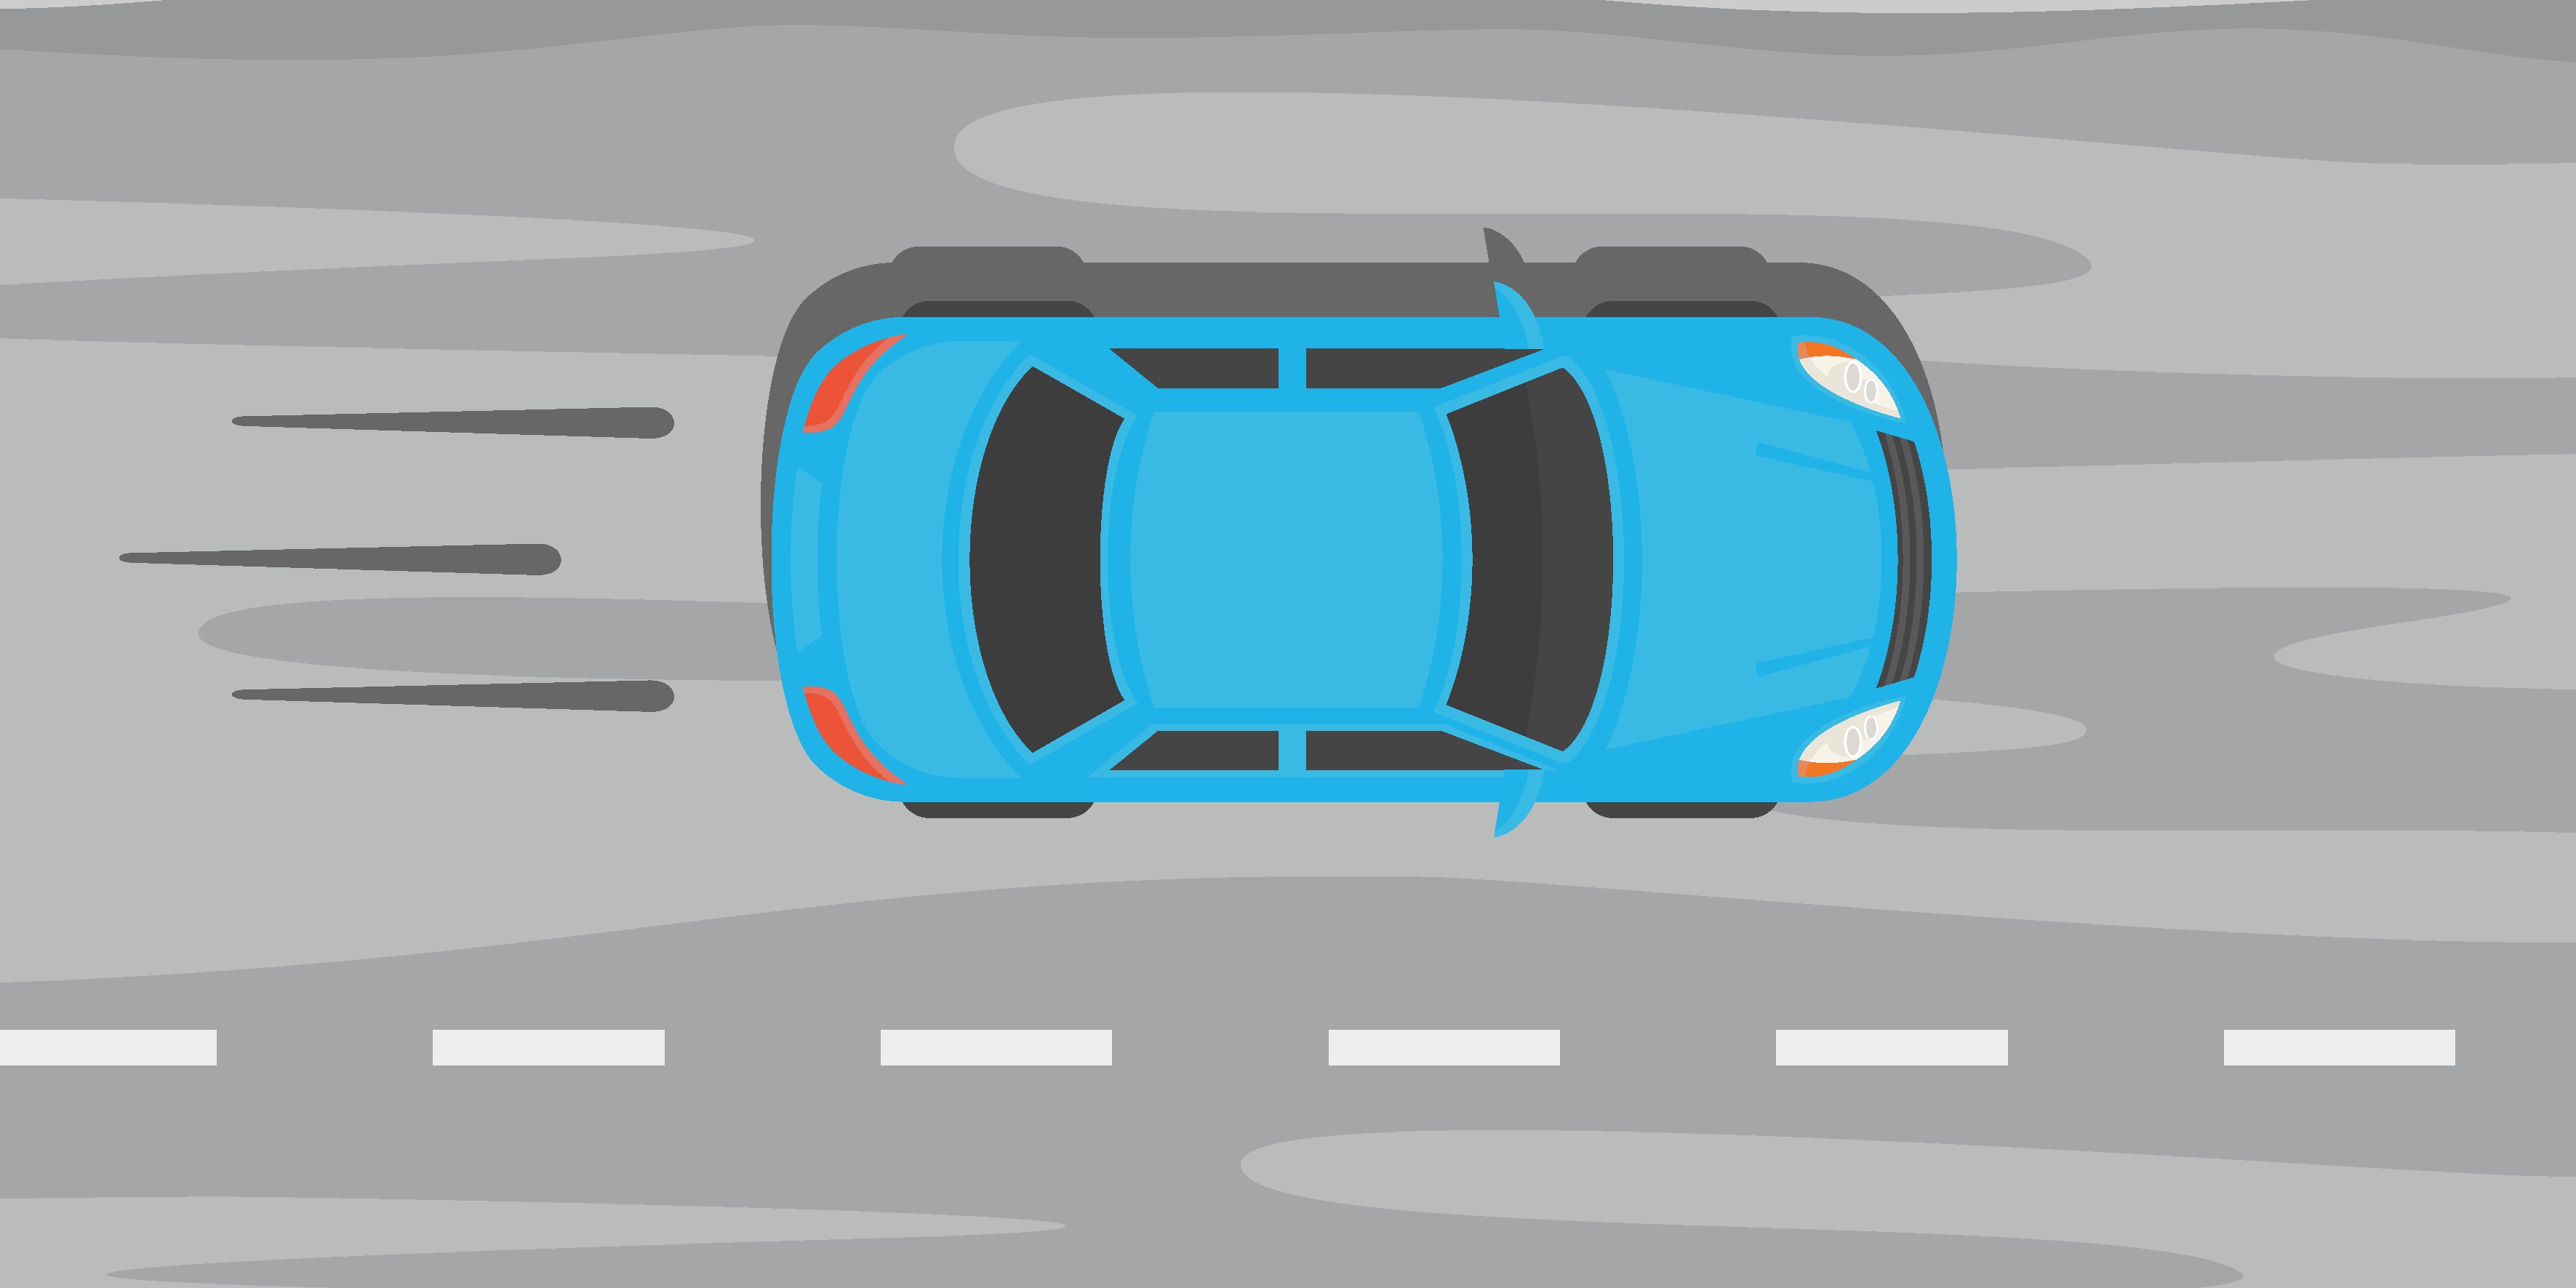 a blue car speeding on a grey road